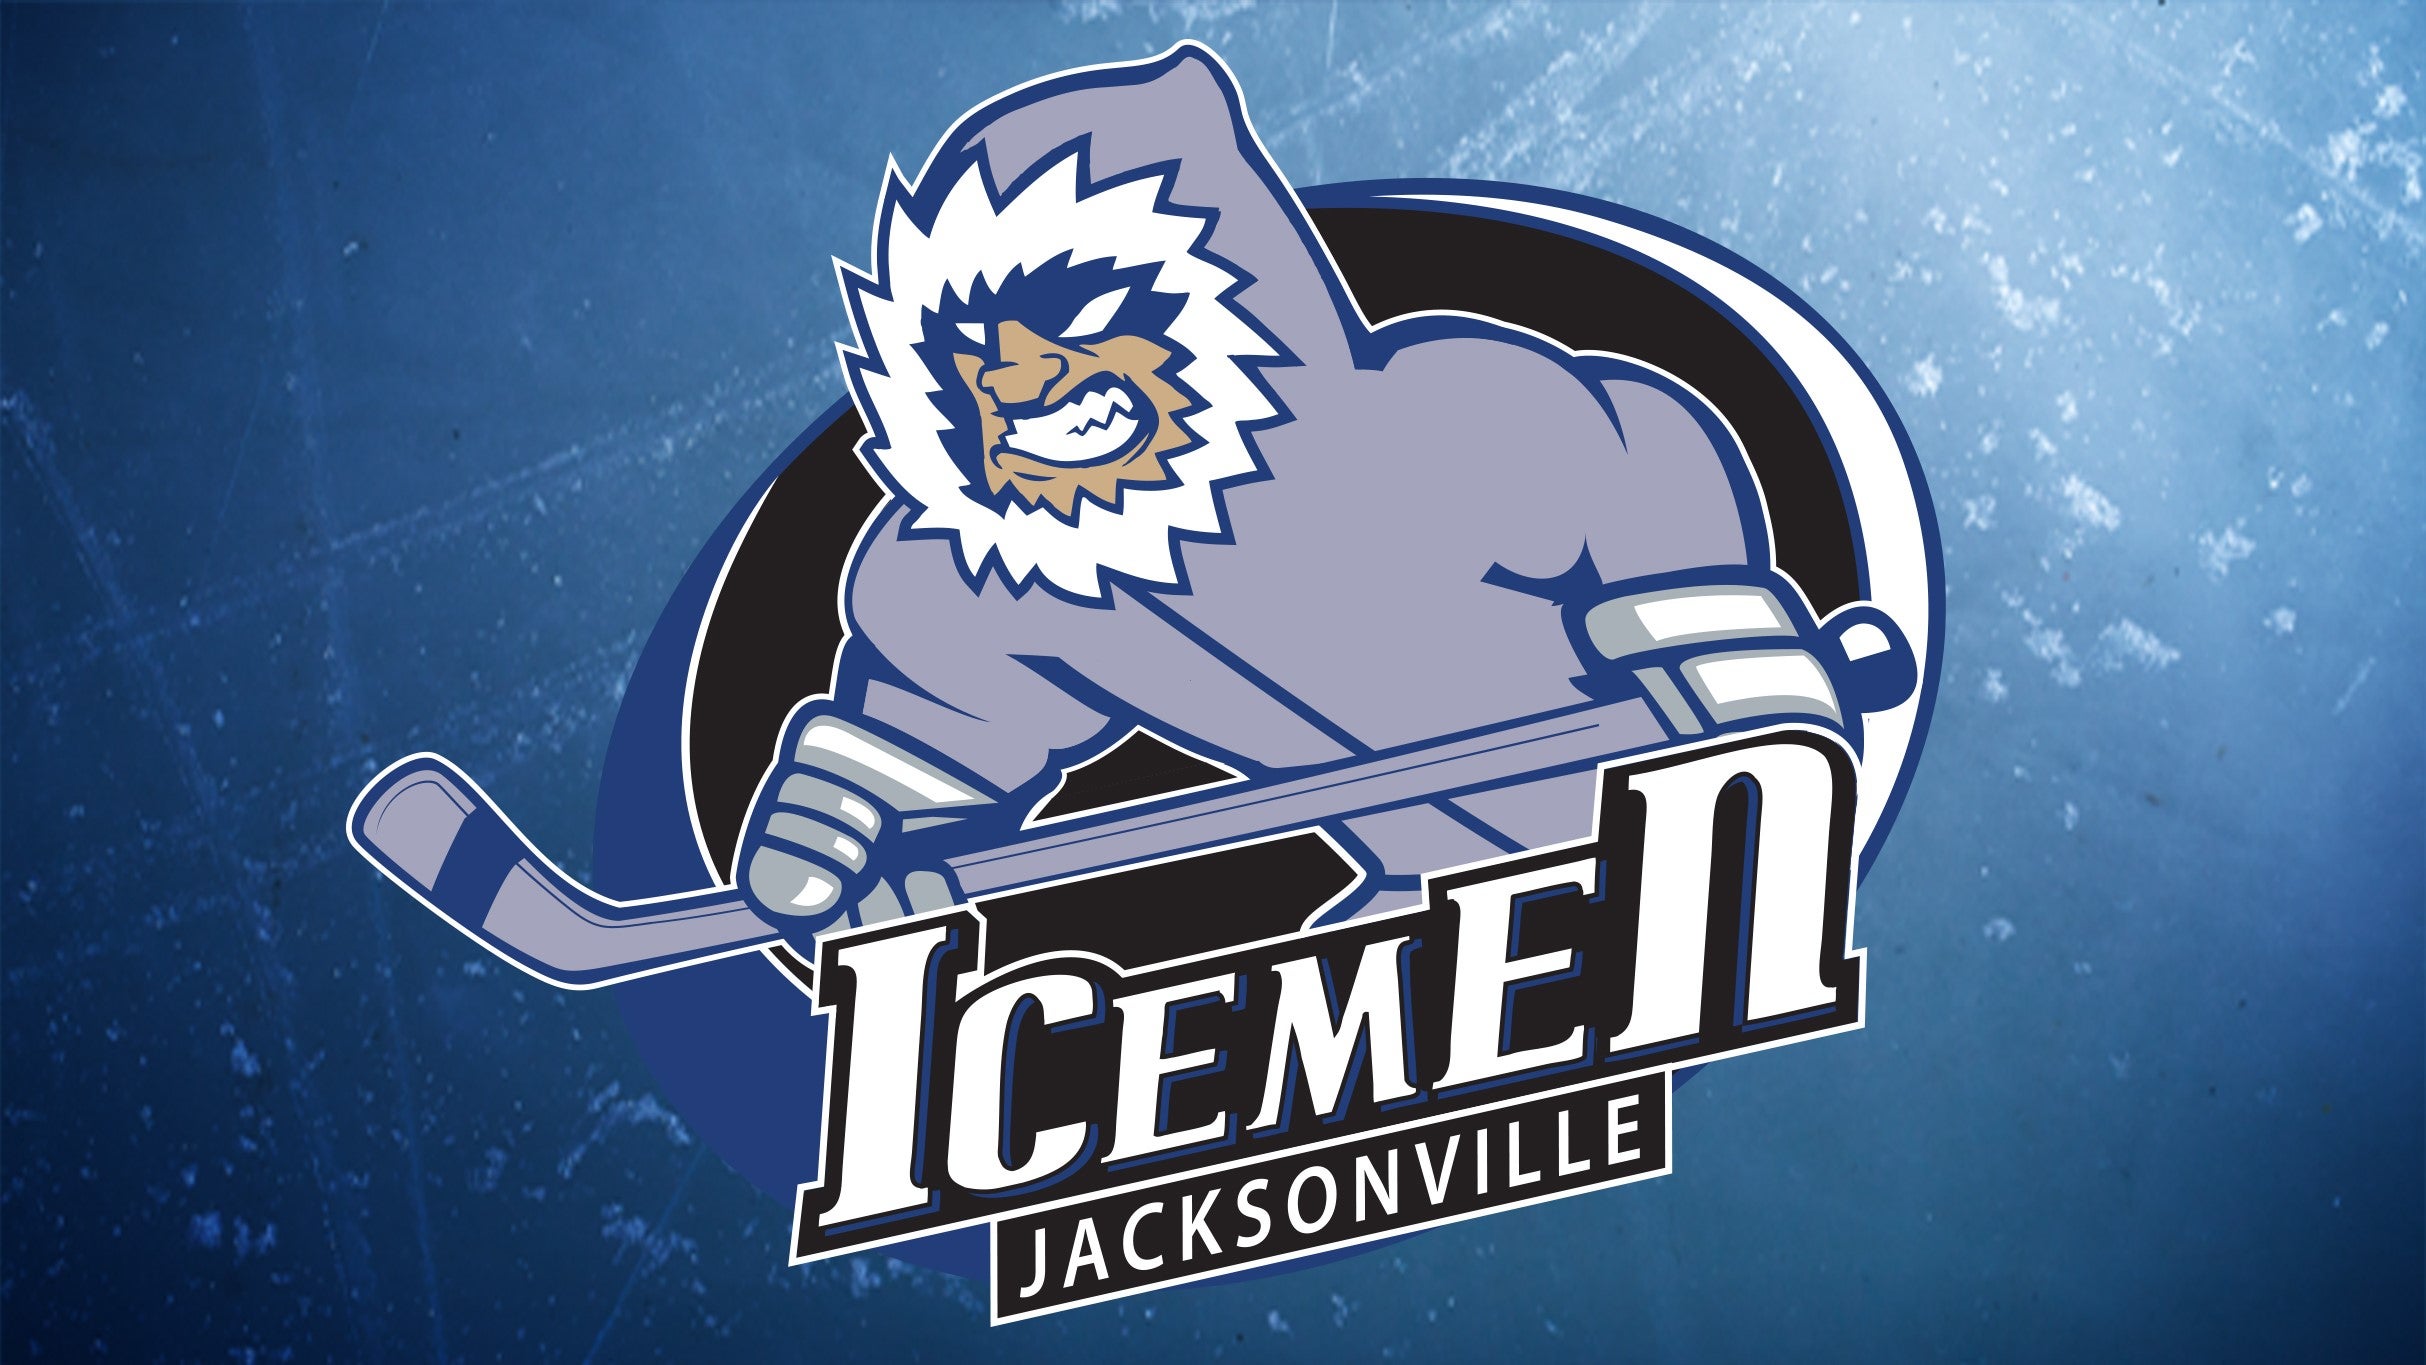 Jacksonville Icemen vs. Orlando Solar Bears in Jacksonville promo photo for Internet presale offer code